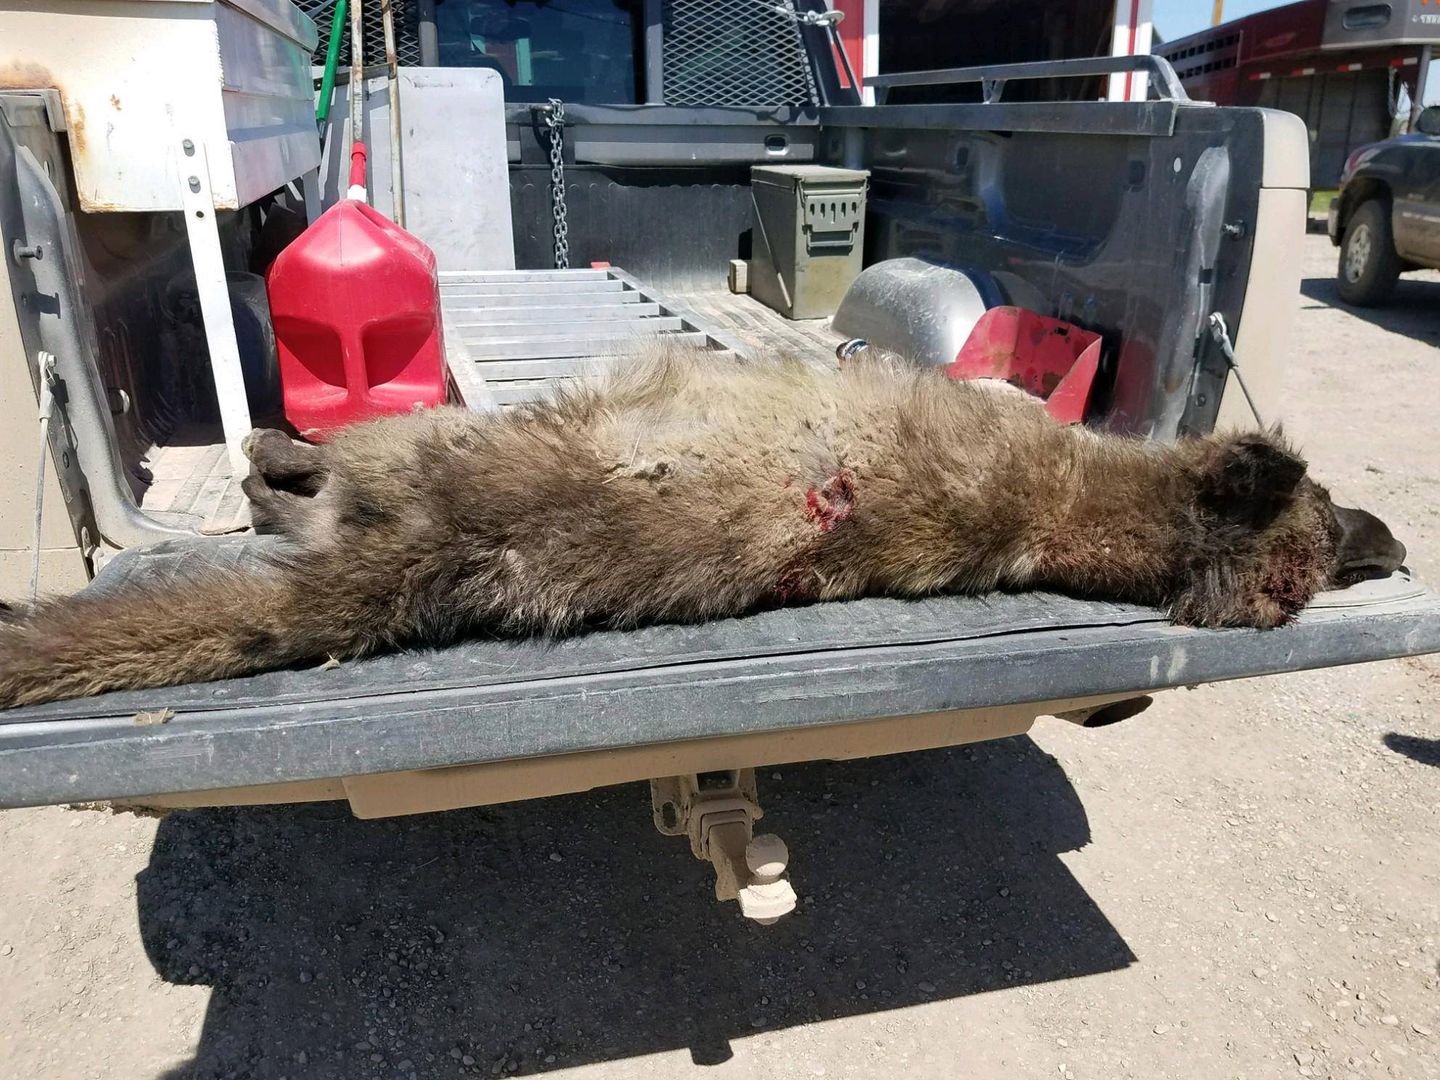 Nikt nie wie, jakie zwierzę zastrzelił hodowca w Montanie. Nawet eksperci są bezradni